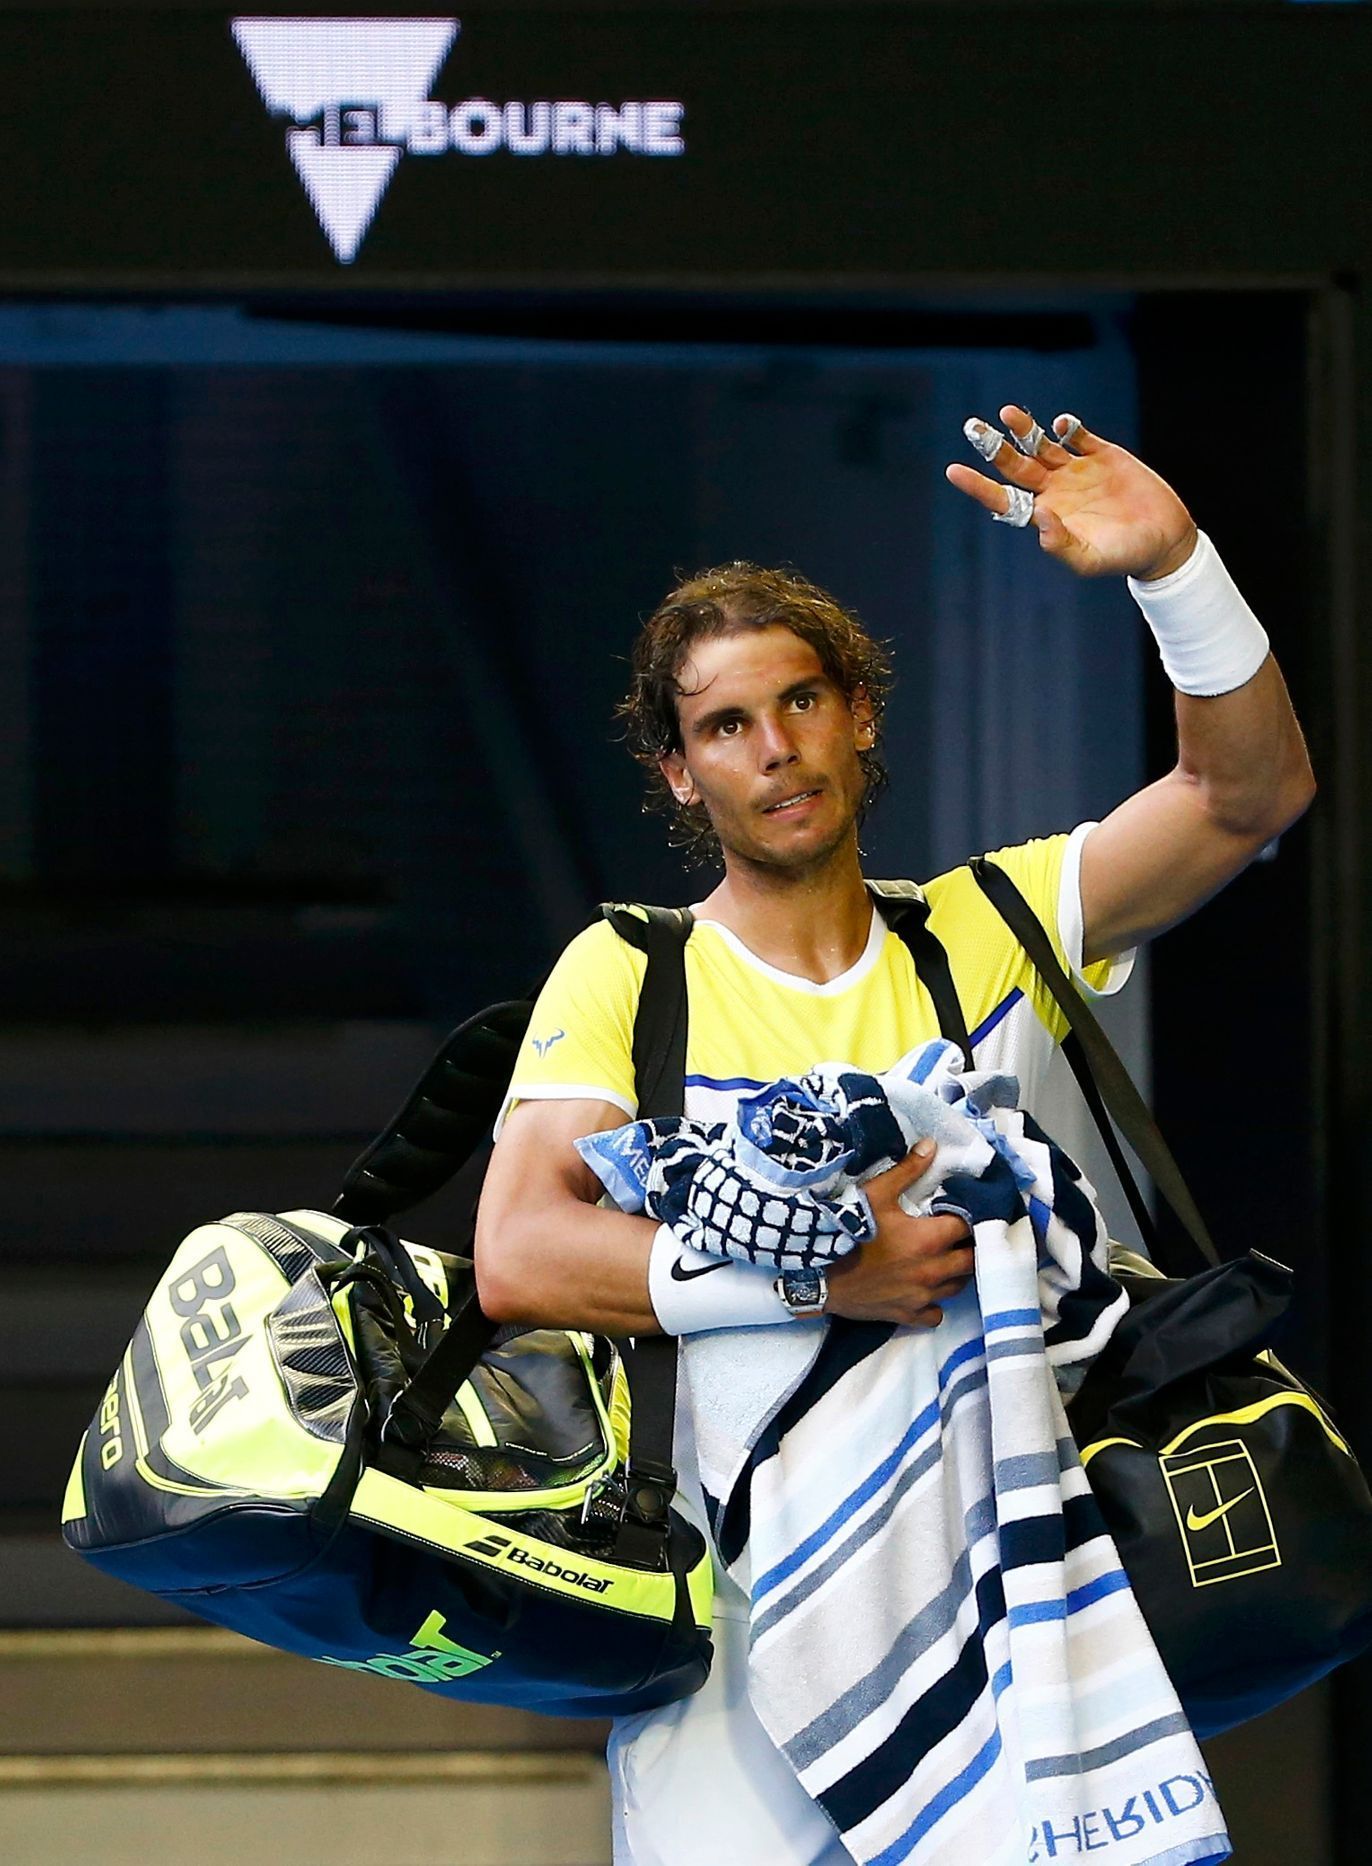 Rafael Nadal na Australian Open 2016